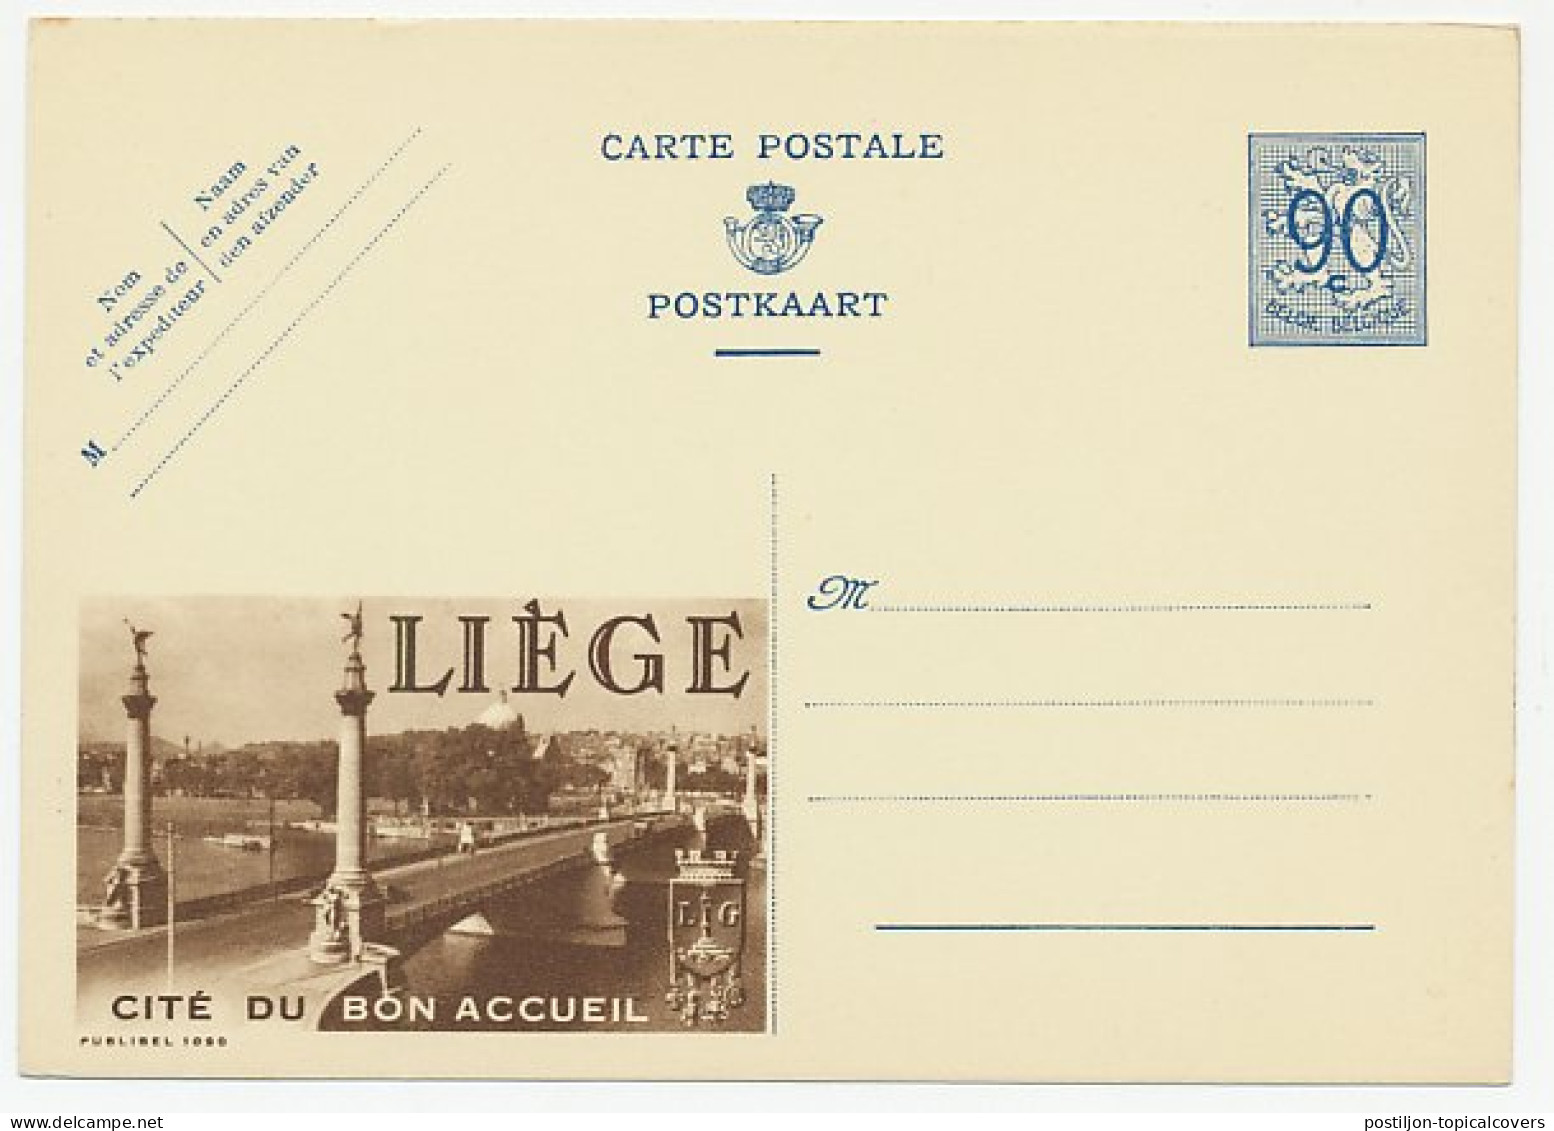 Publibel - Postal Stationery Belgium 1951 Bridge - Luik - Puentes